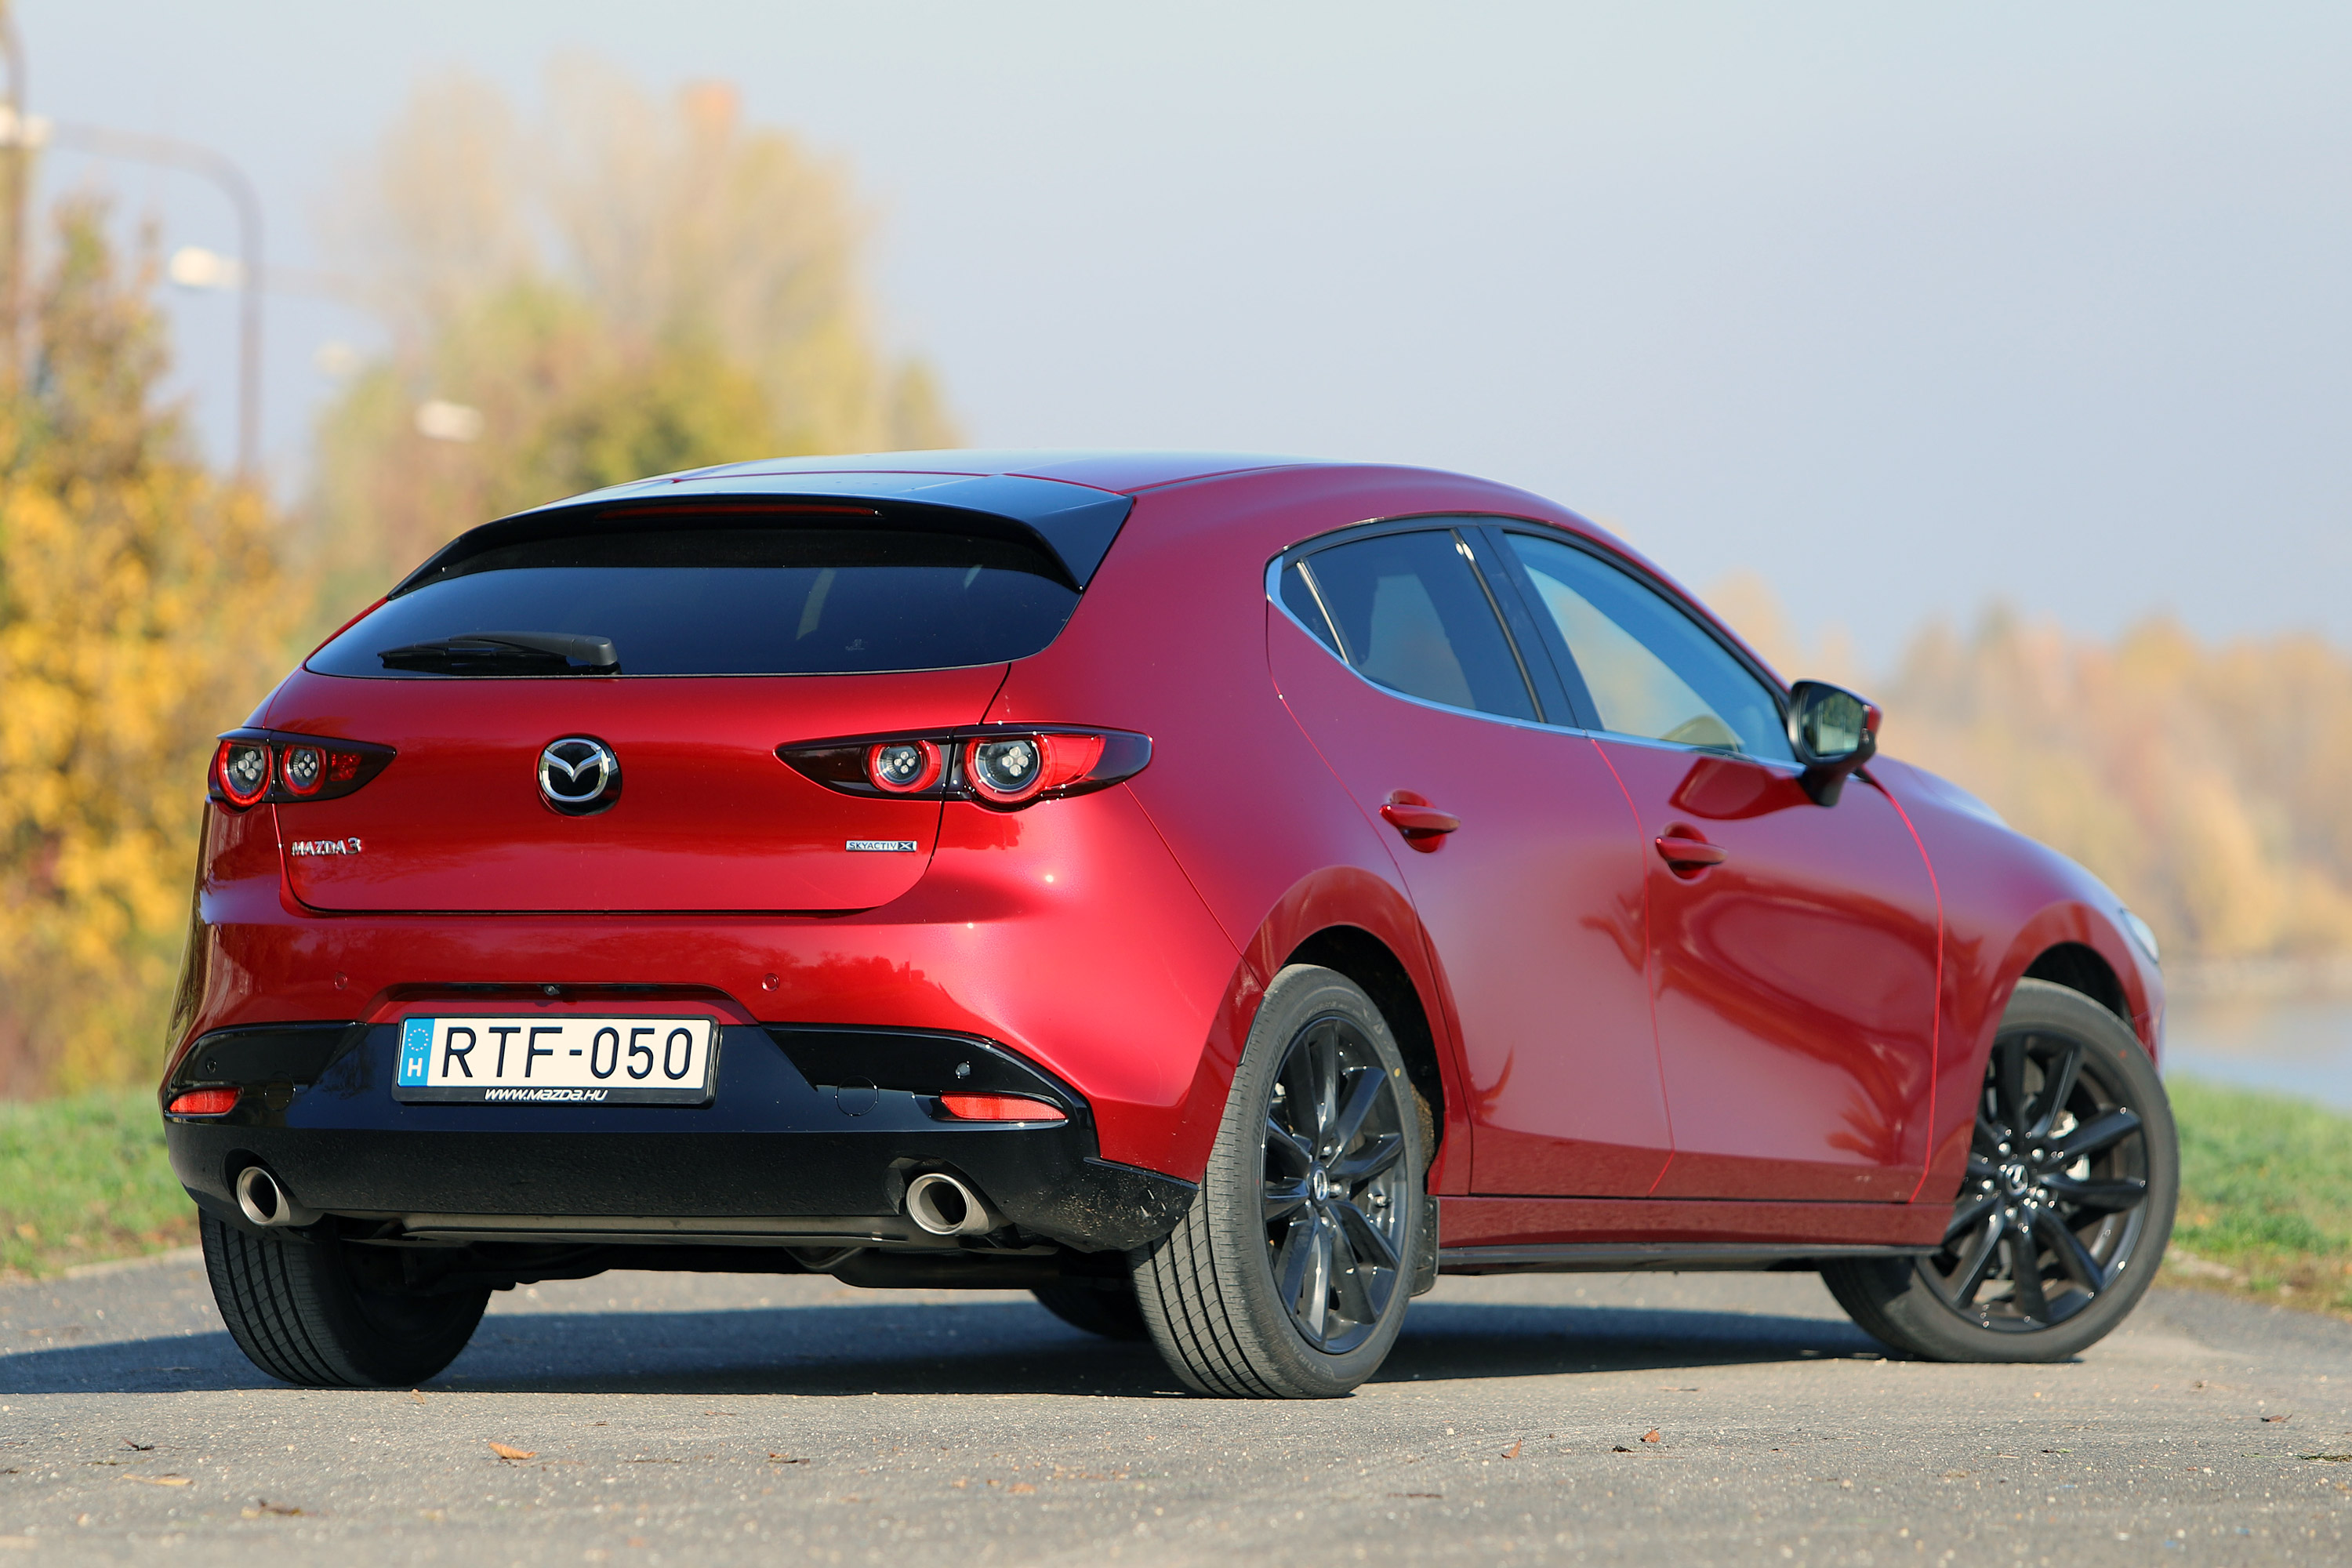 Benzinmotor, ami eddig még senkinek nem sikerült – Mazda3 Skyactiv-X teszt 7